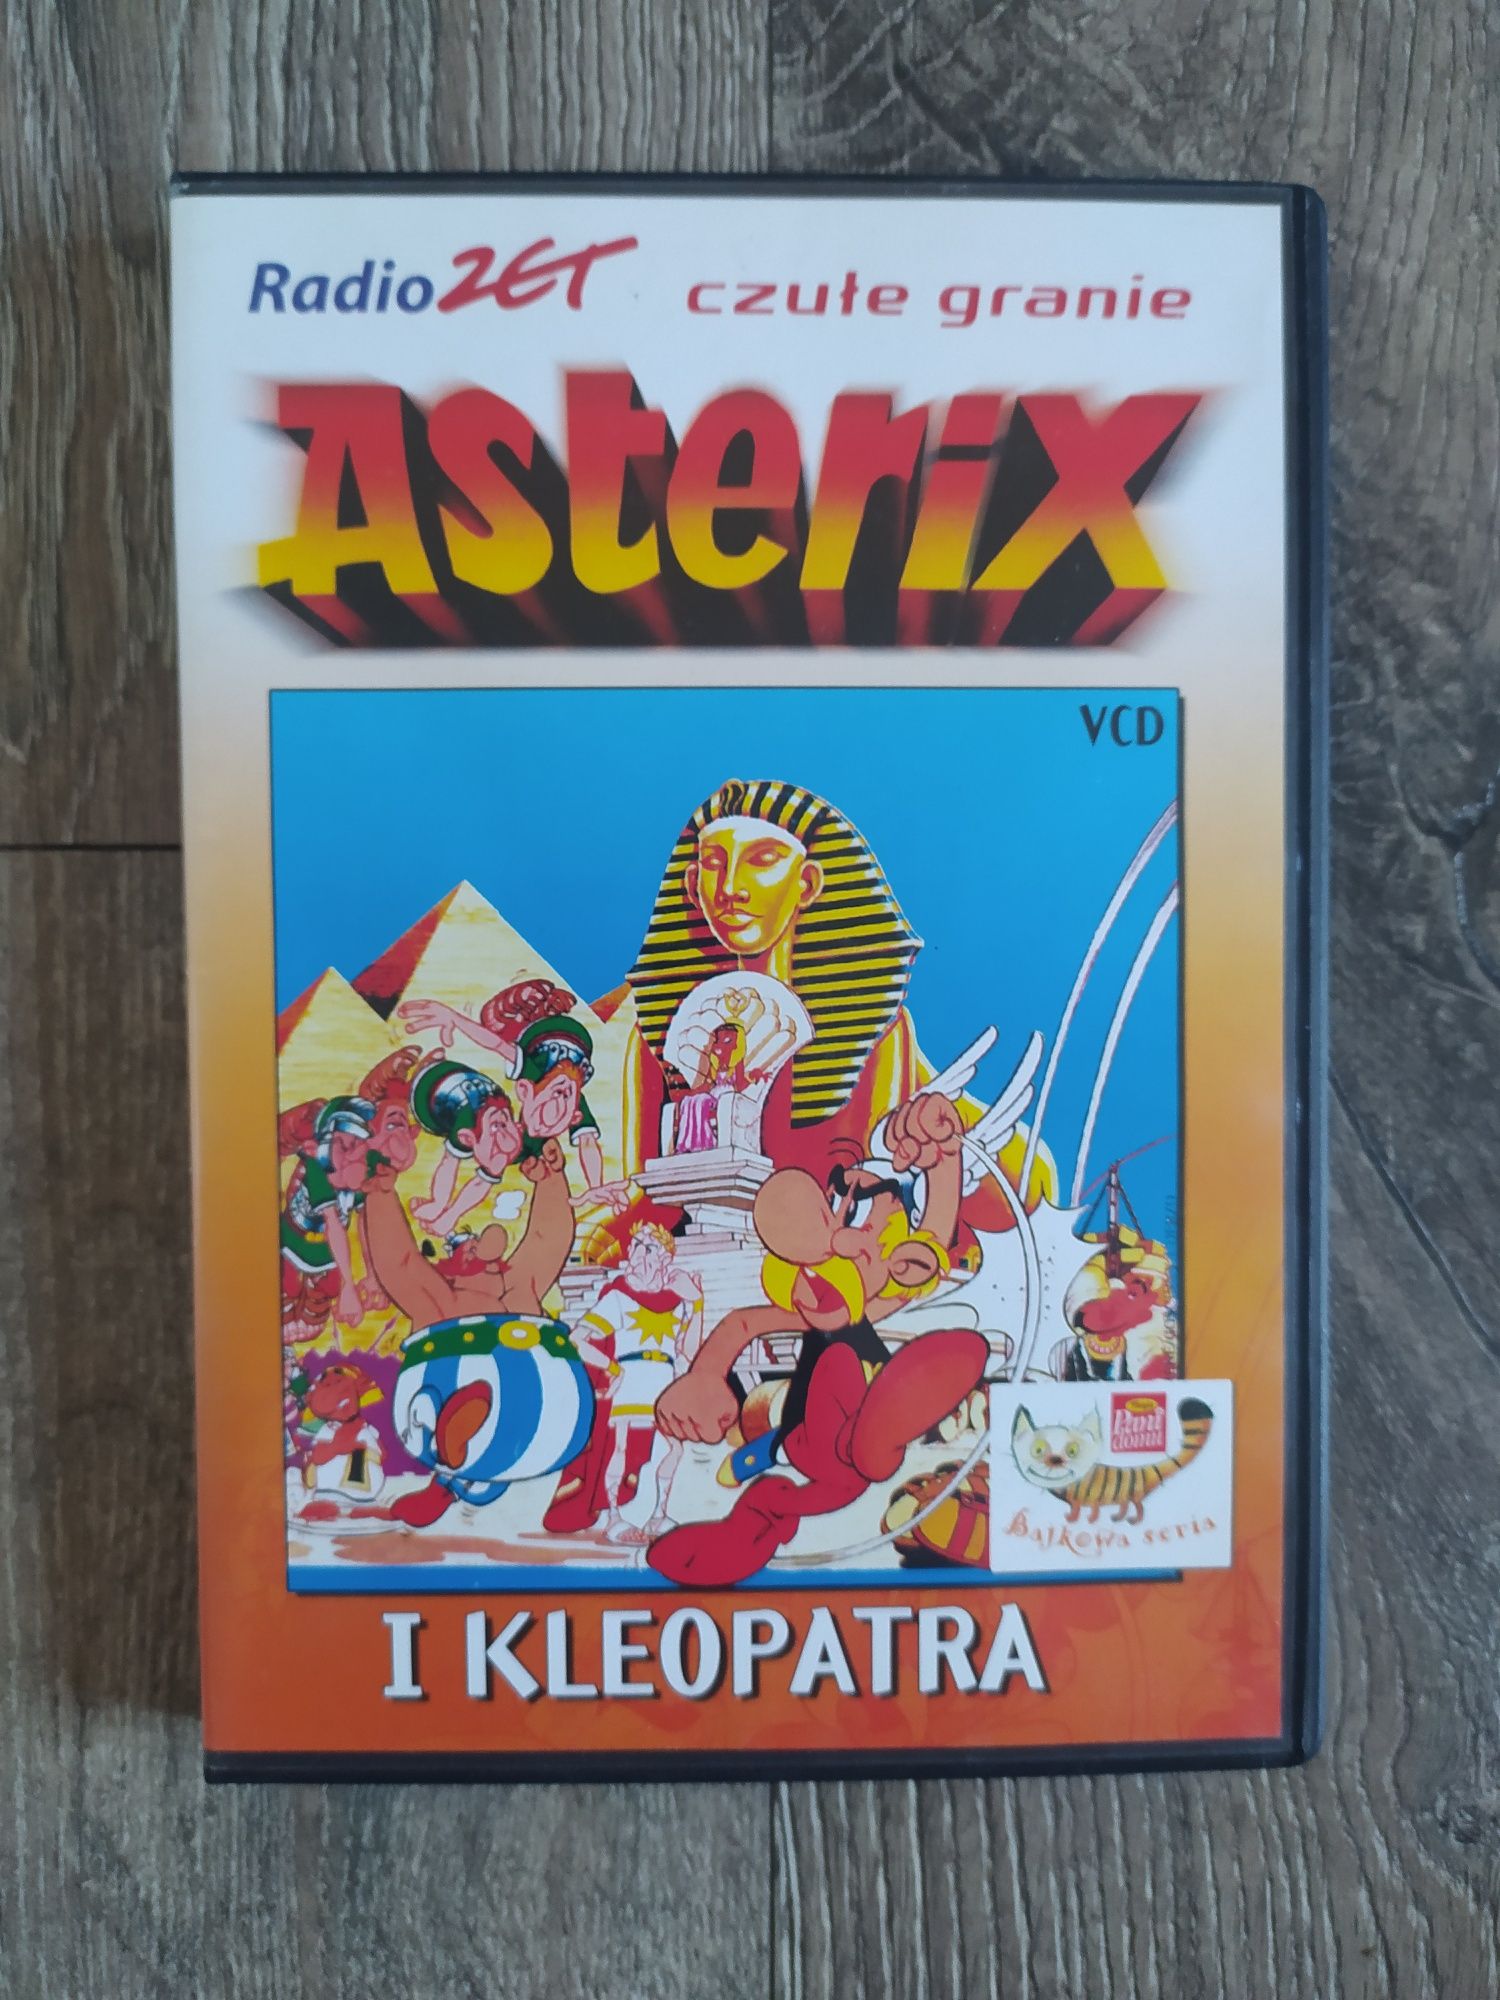 Bajka/Film Asterix DVD Wysyłka